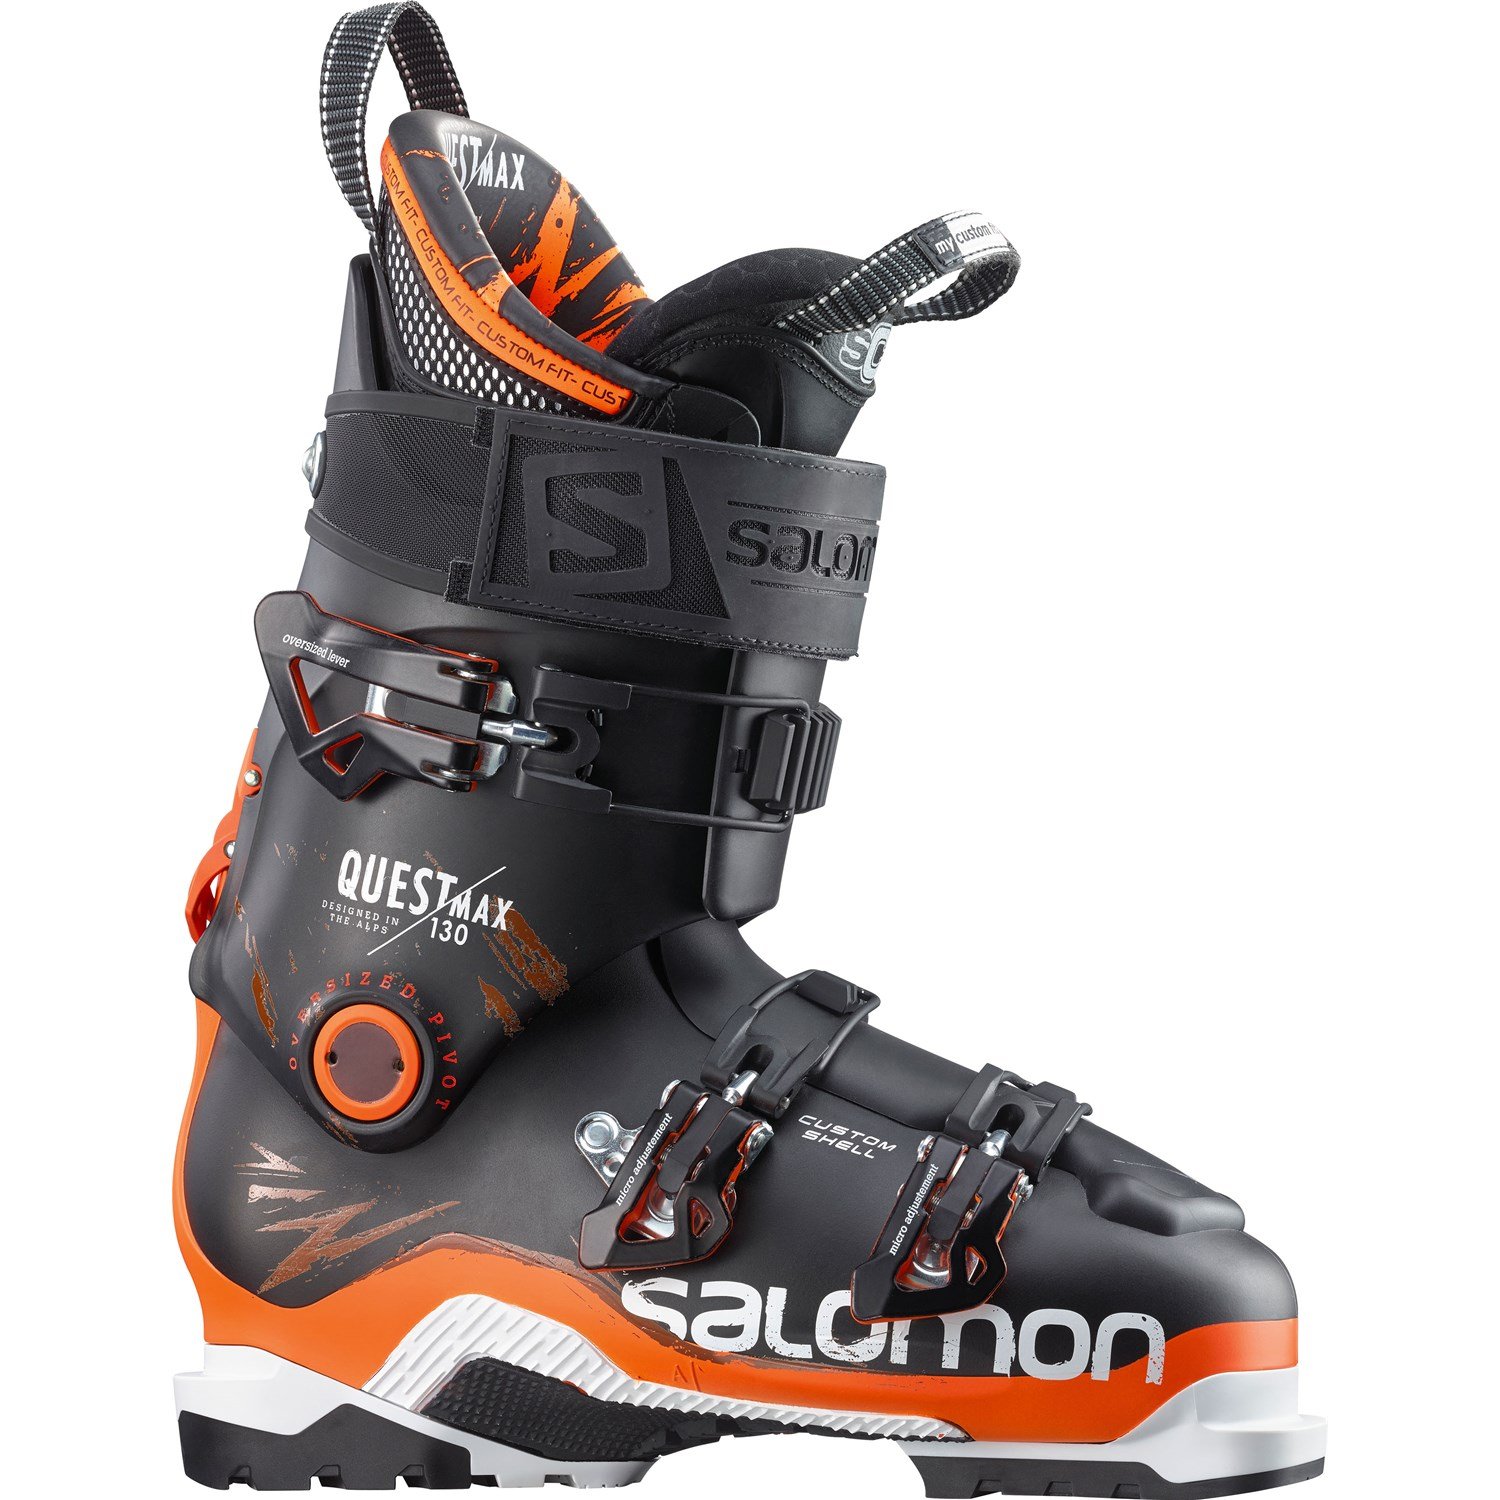 Bota Ski Salomon Quest Max 130 